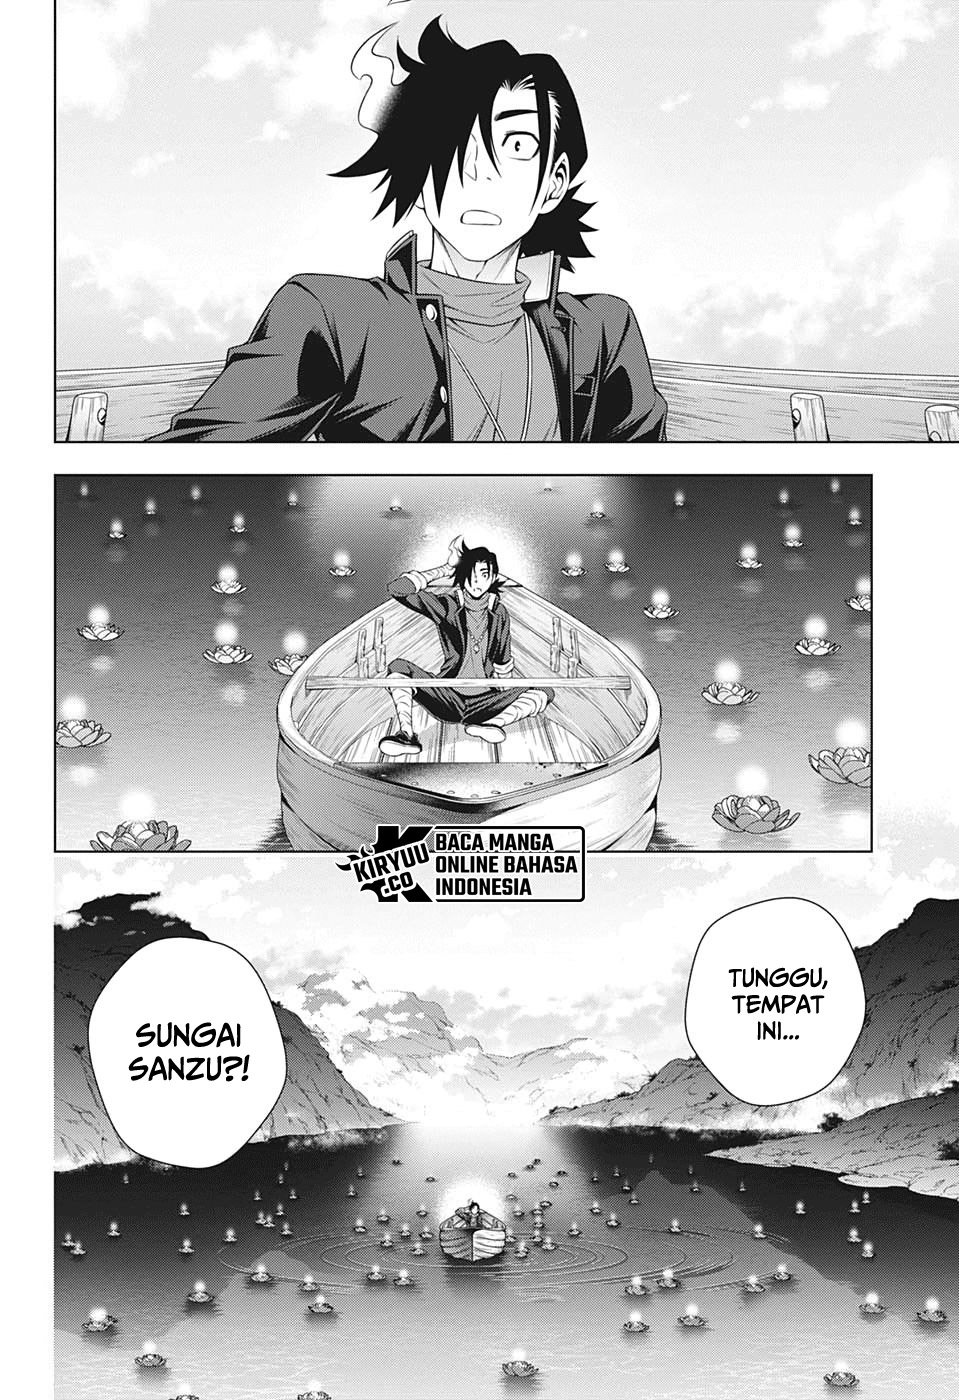 Yuragi-sou no Yuuna-san Chapter 207